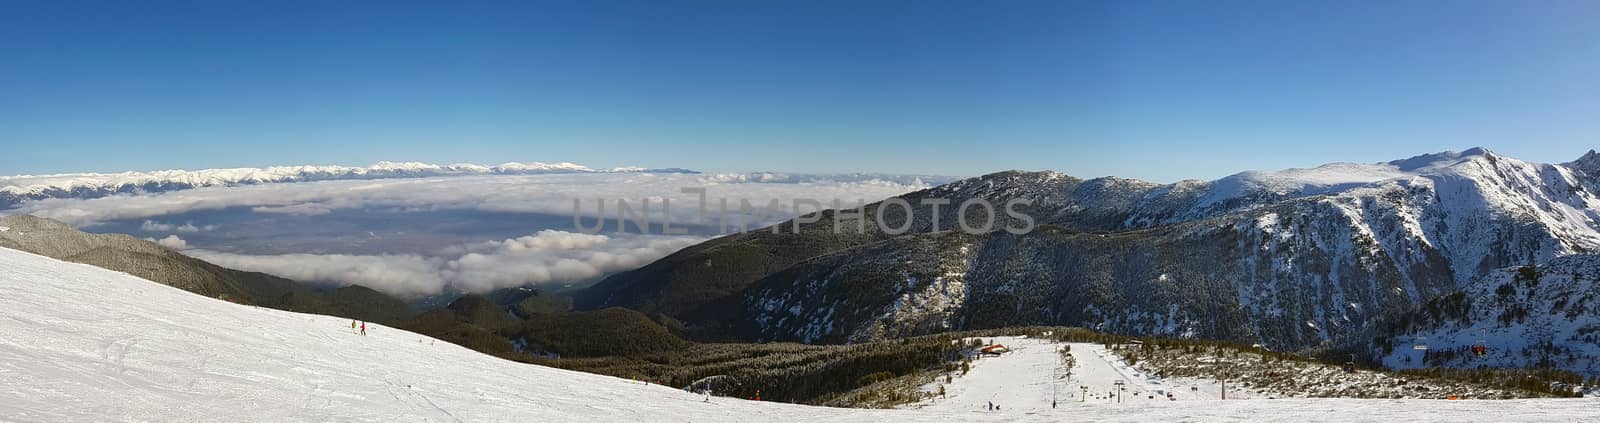 High mountain ski resort, panorama of mountain slopes